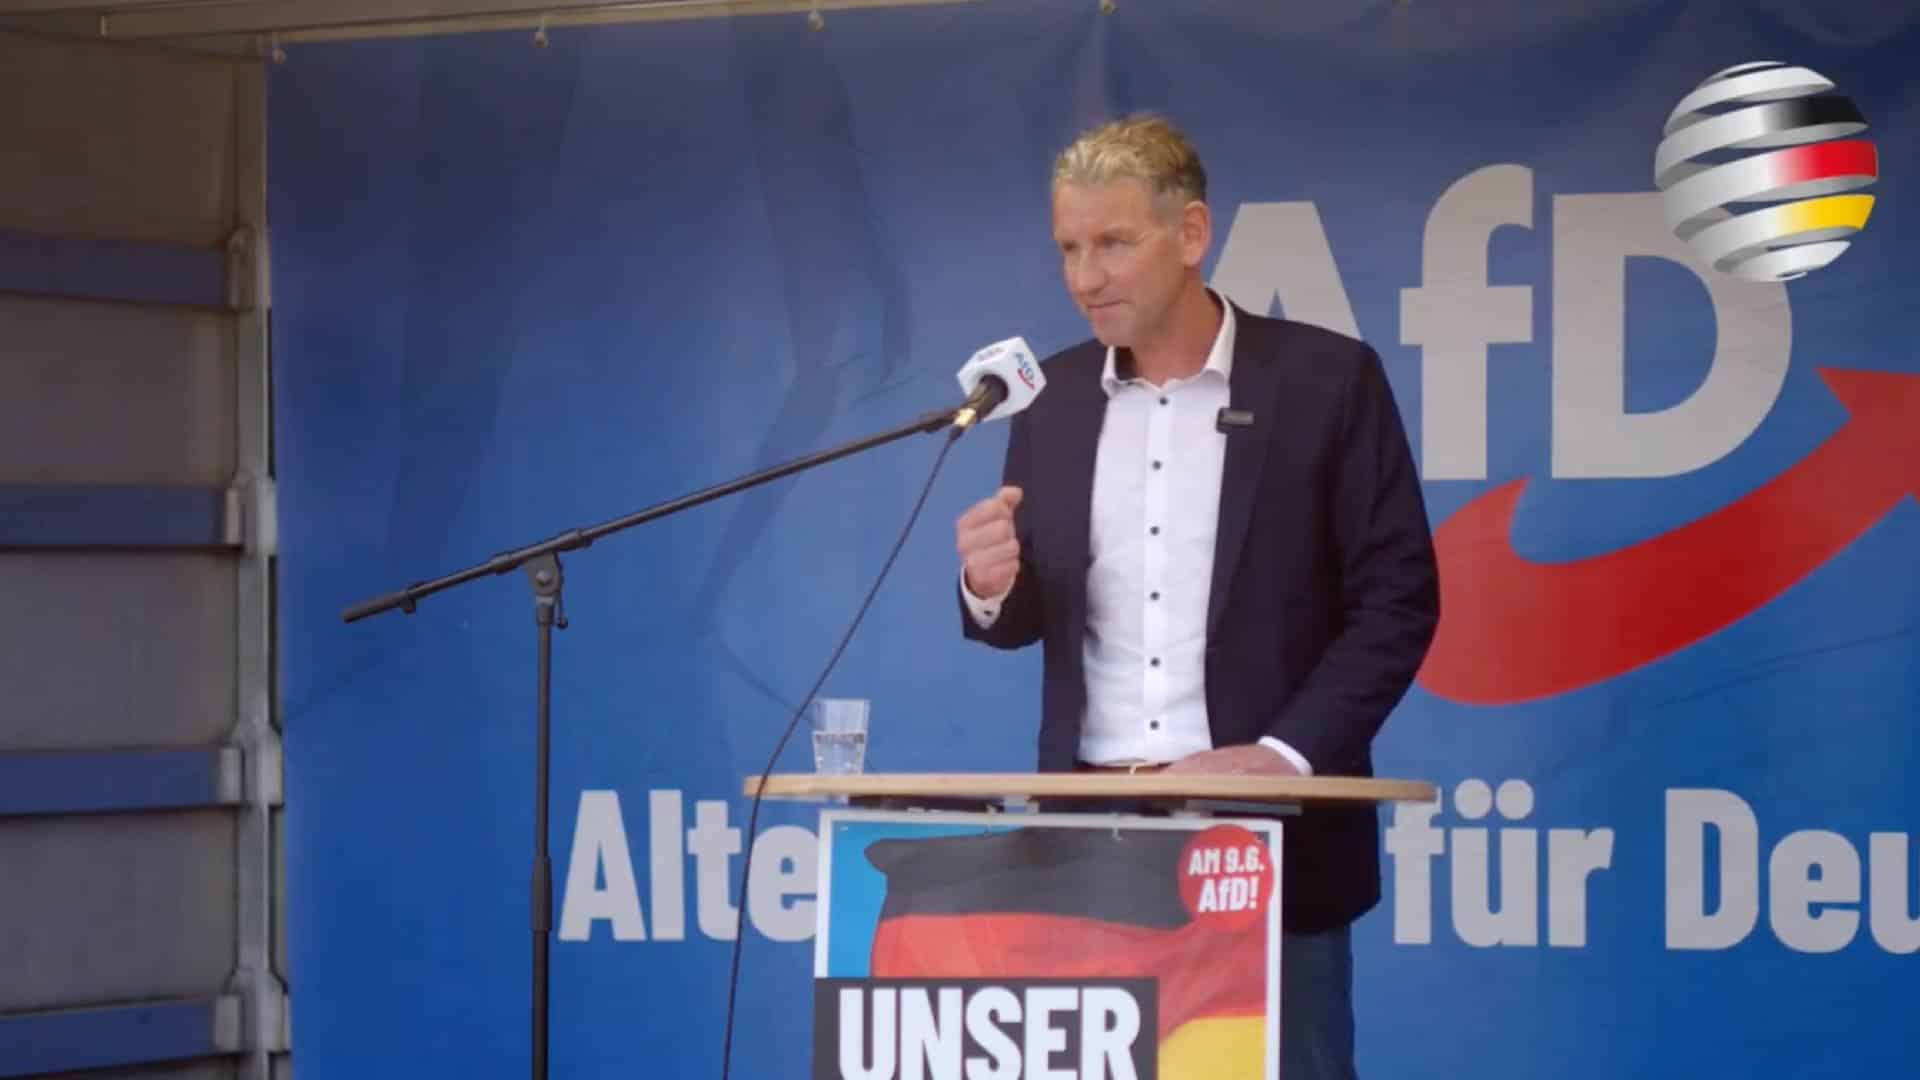 Björn Höcke auf dem Maifest der NRW-AfD: „Deutsche müssen wieder selbstbewusst und frei werden!“